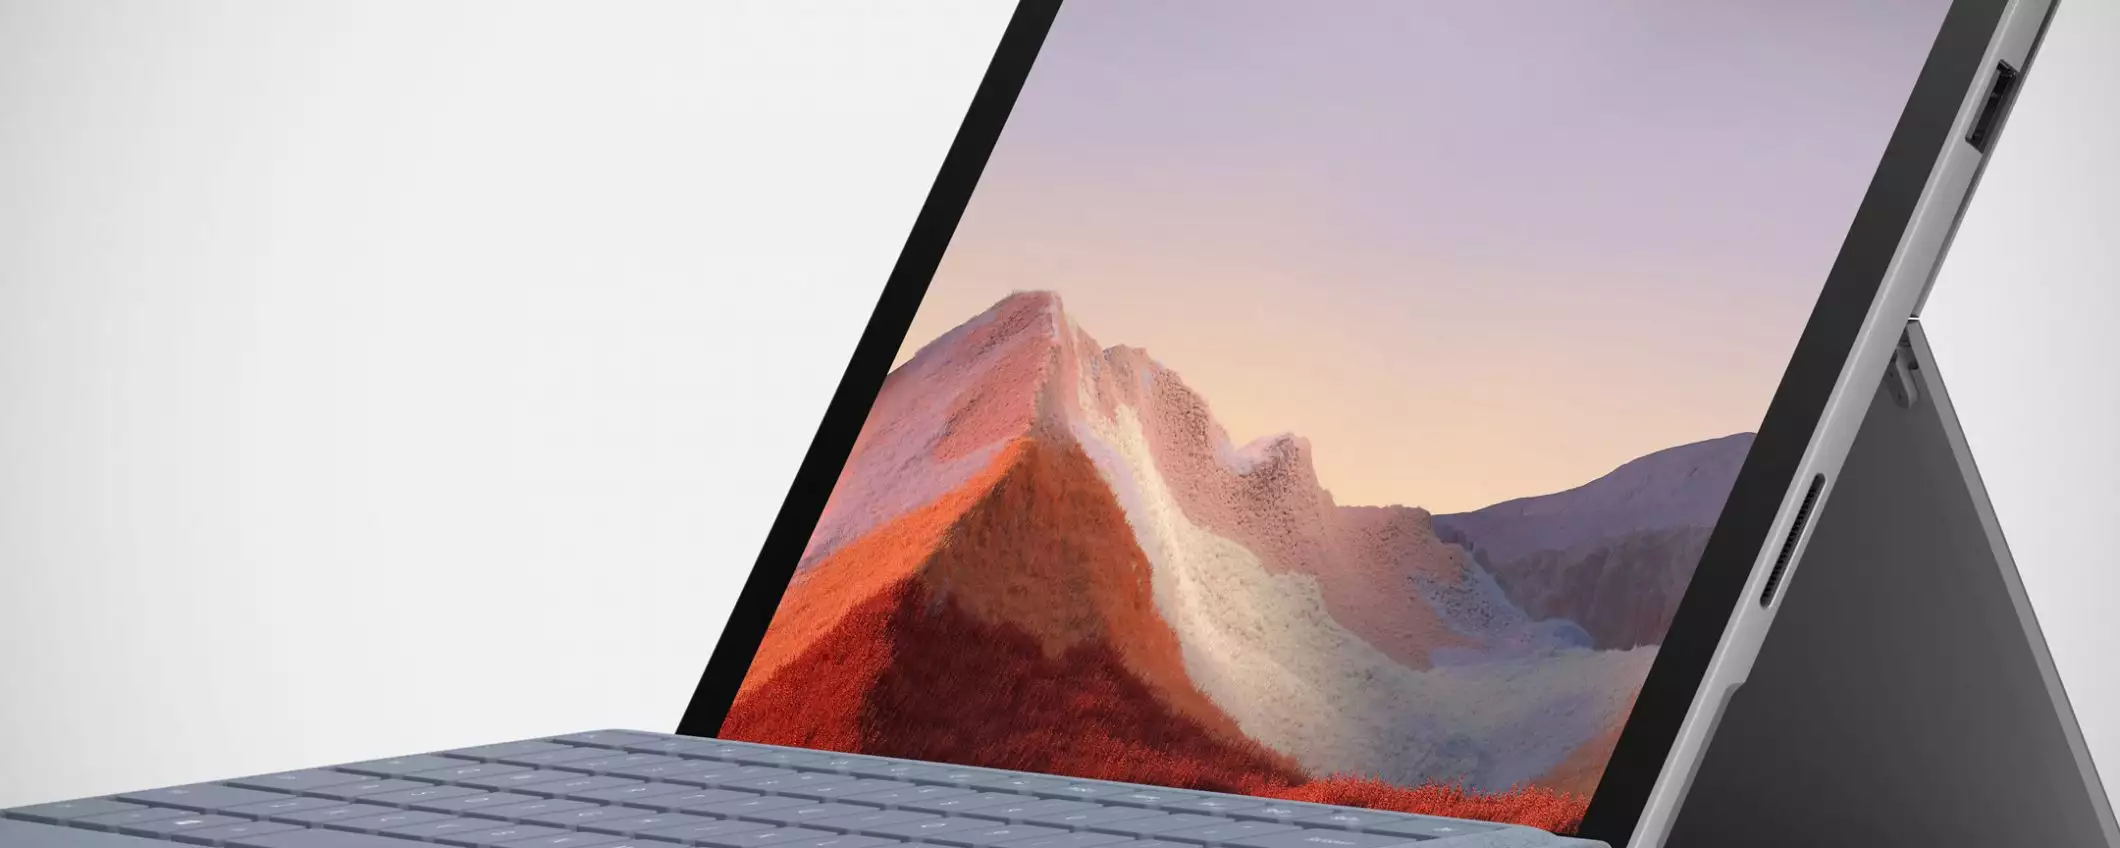 Surface Pro 7: più potenza nello stesso design